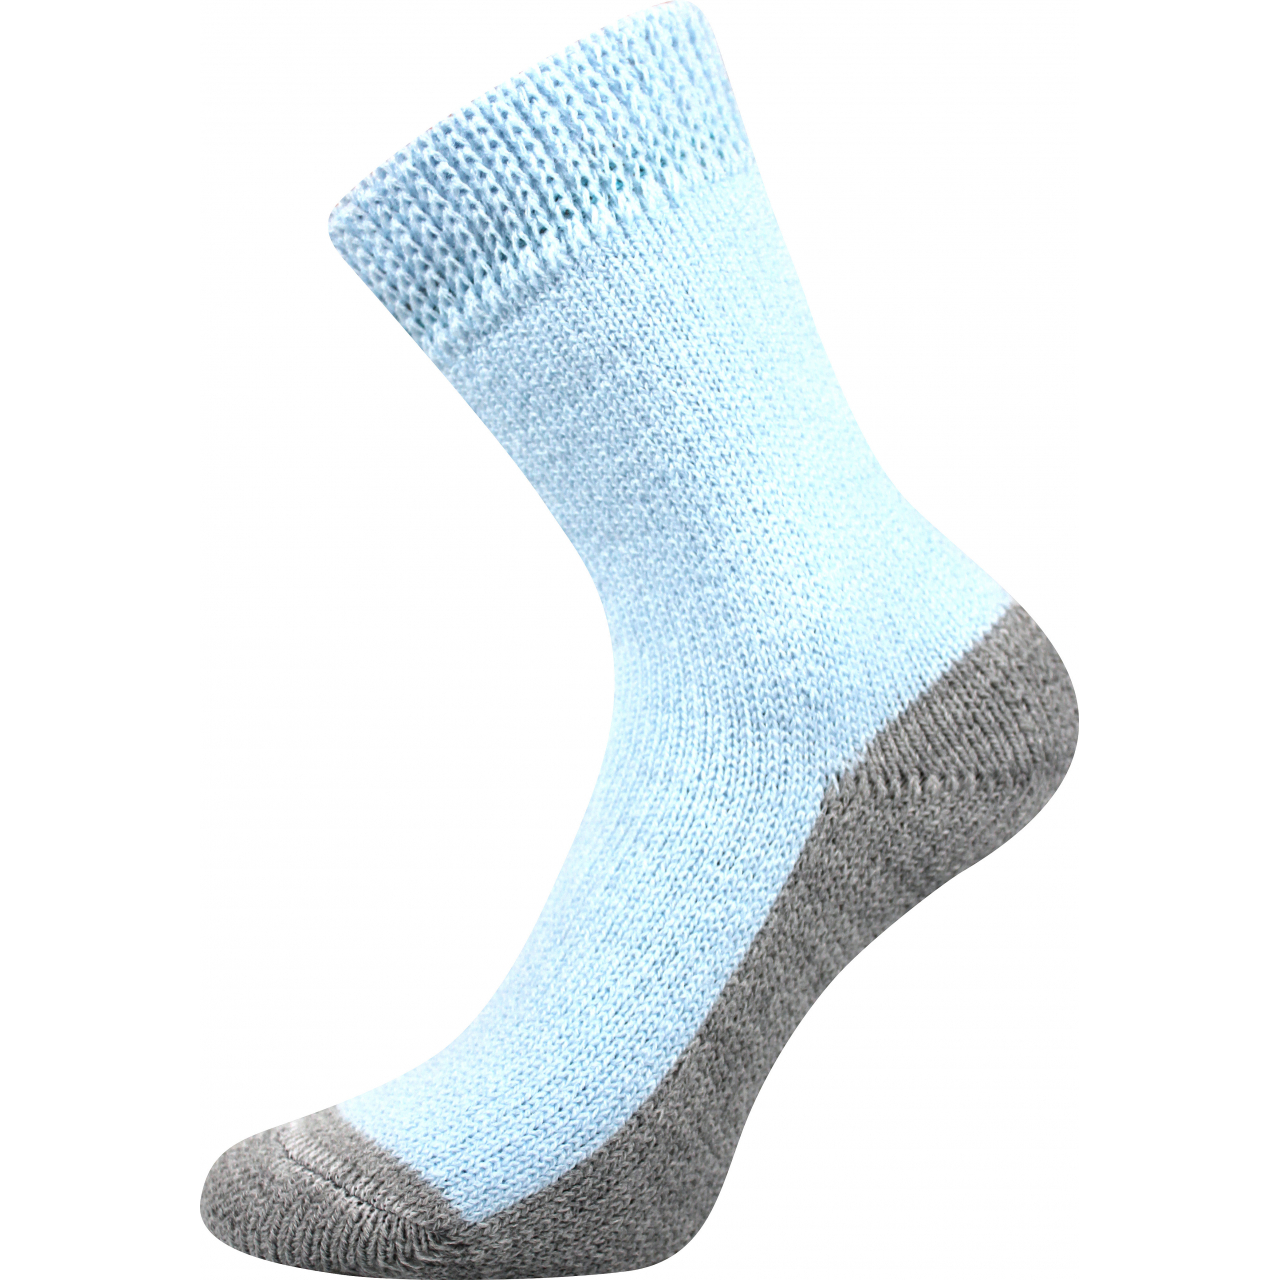 Ponožky unisex Boma Spací - světle modré, 39-42